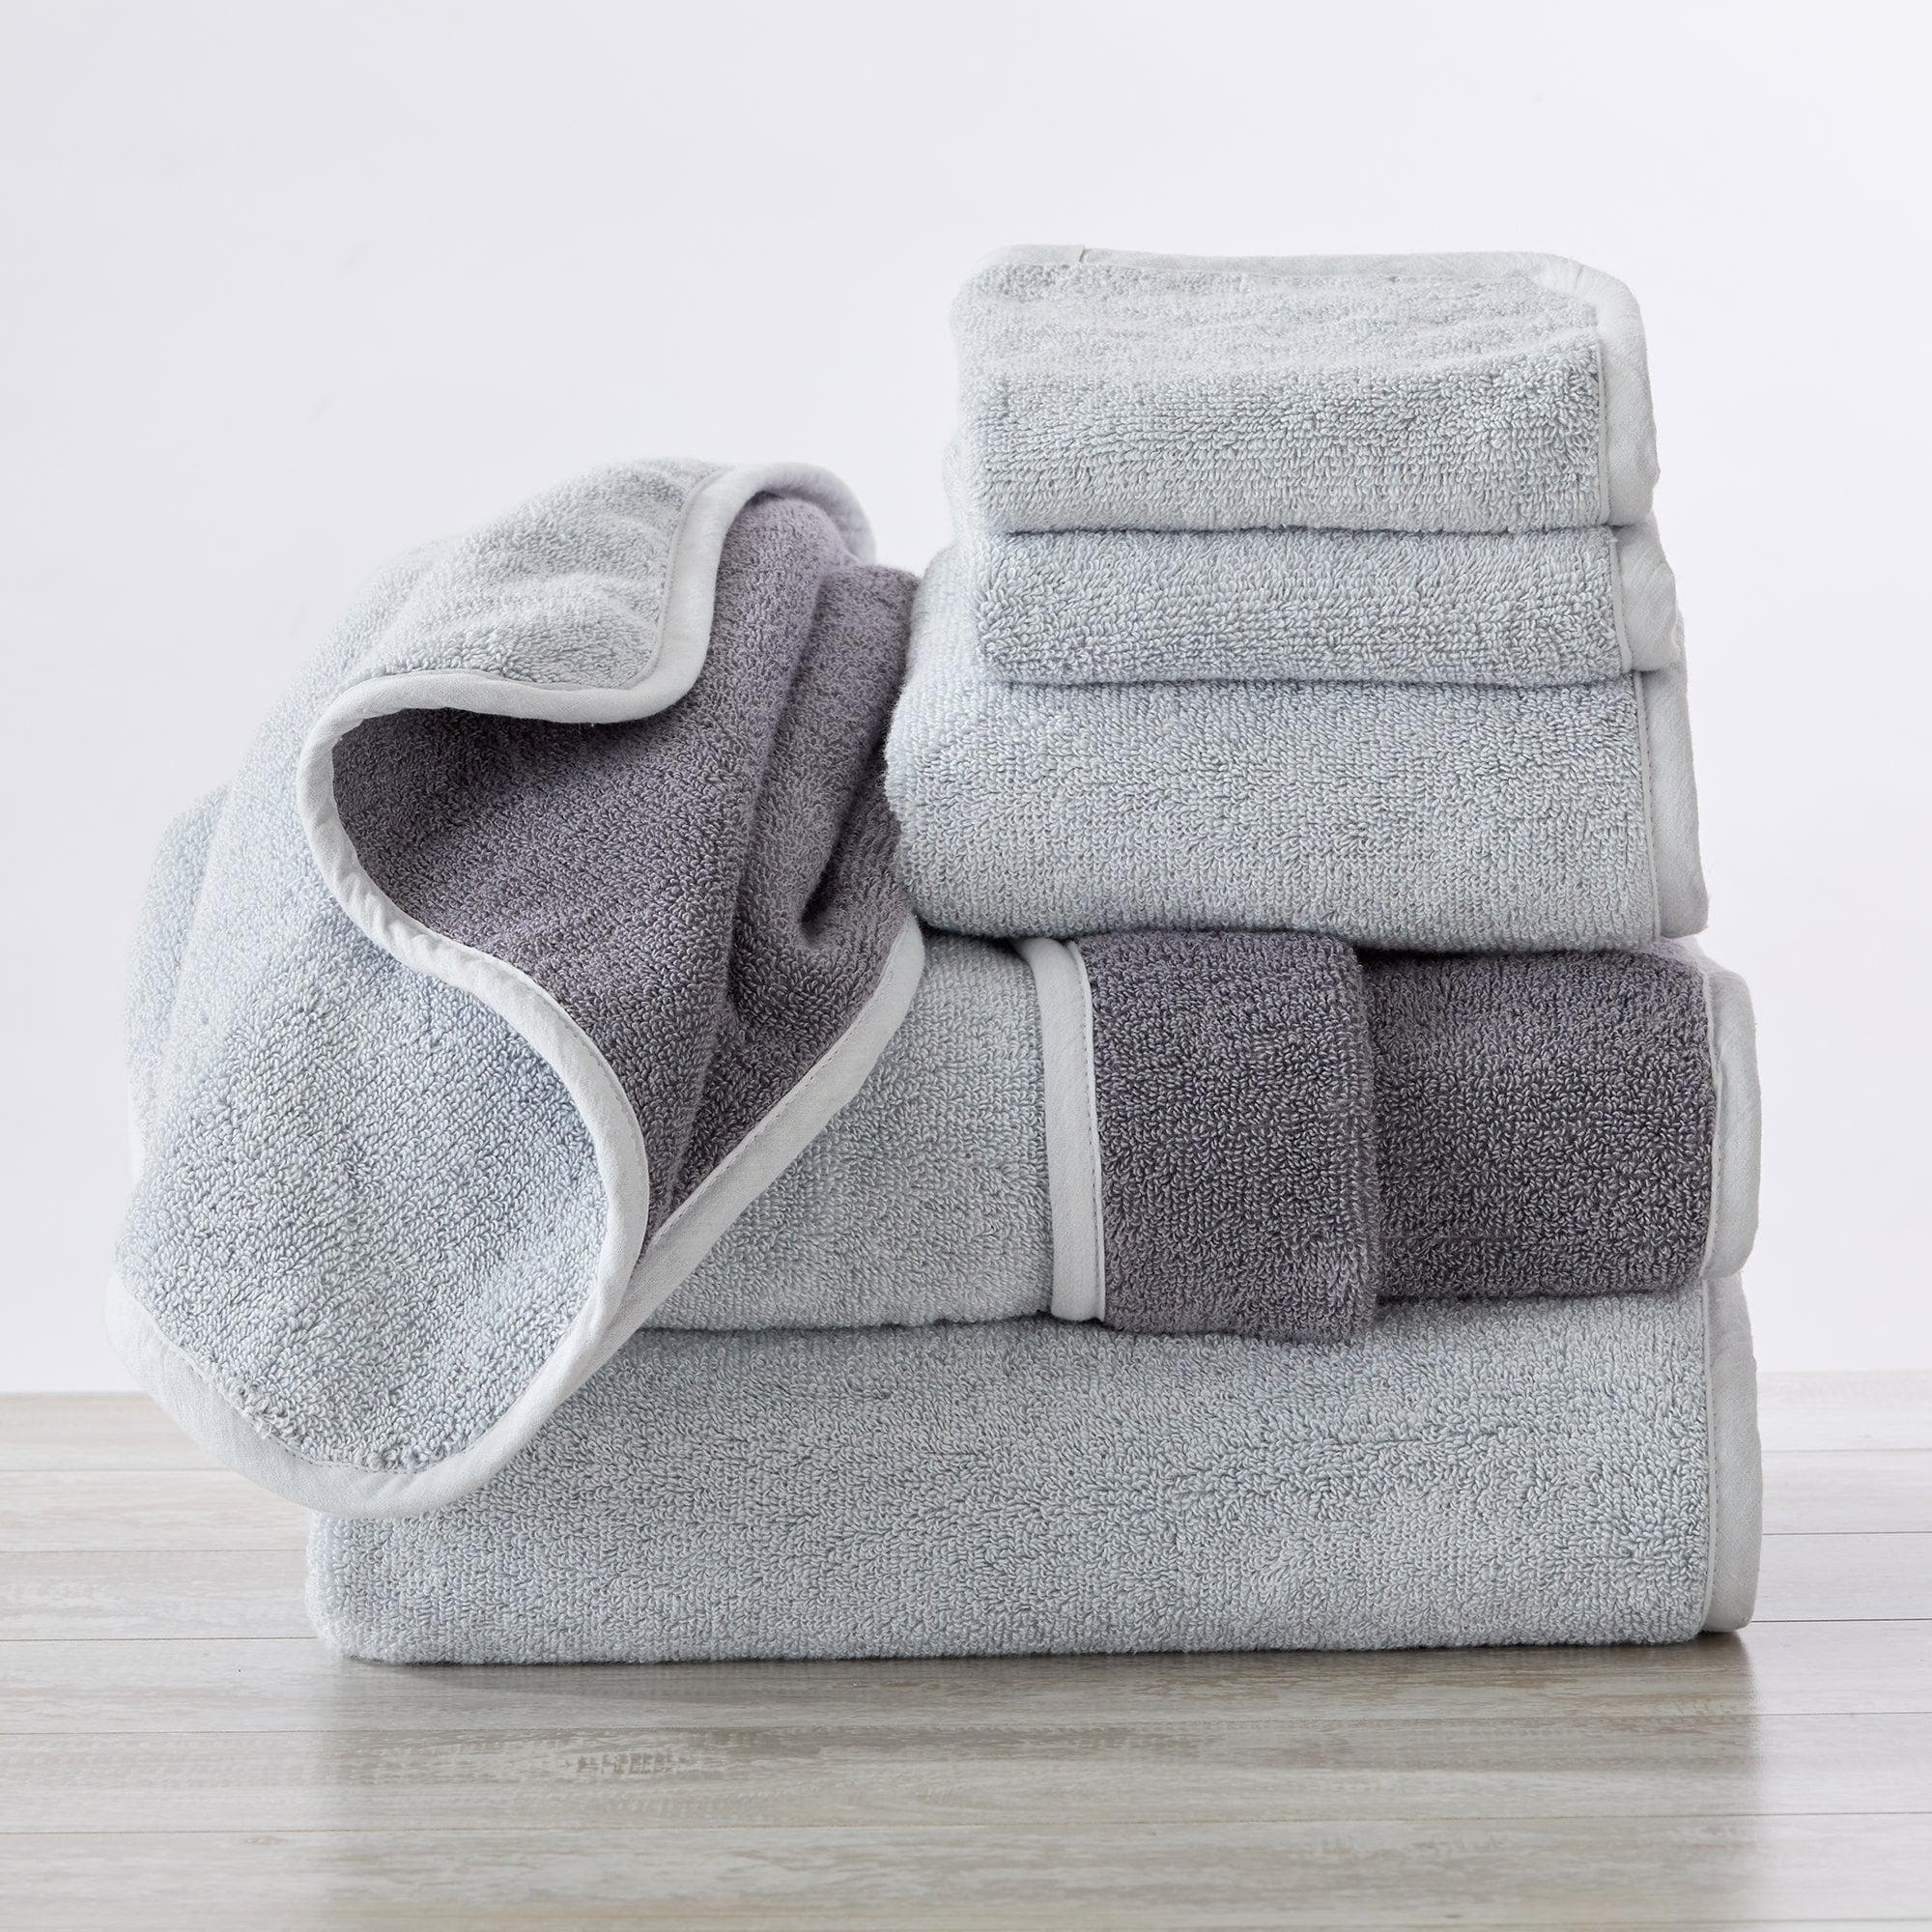 Garnier-Thiebaut Towel Plush Luxury Soft White Towels Set 6-Pieces (2 Bath Towels, 2 Hand Towels, 2 Face cloth)